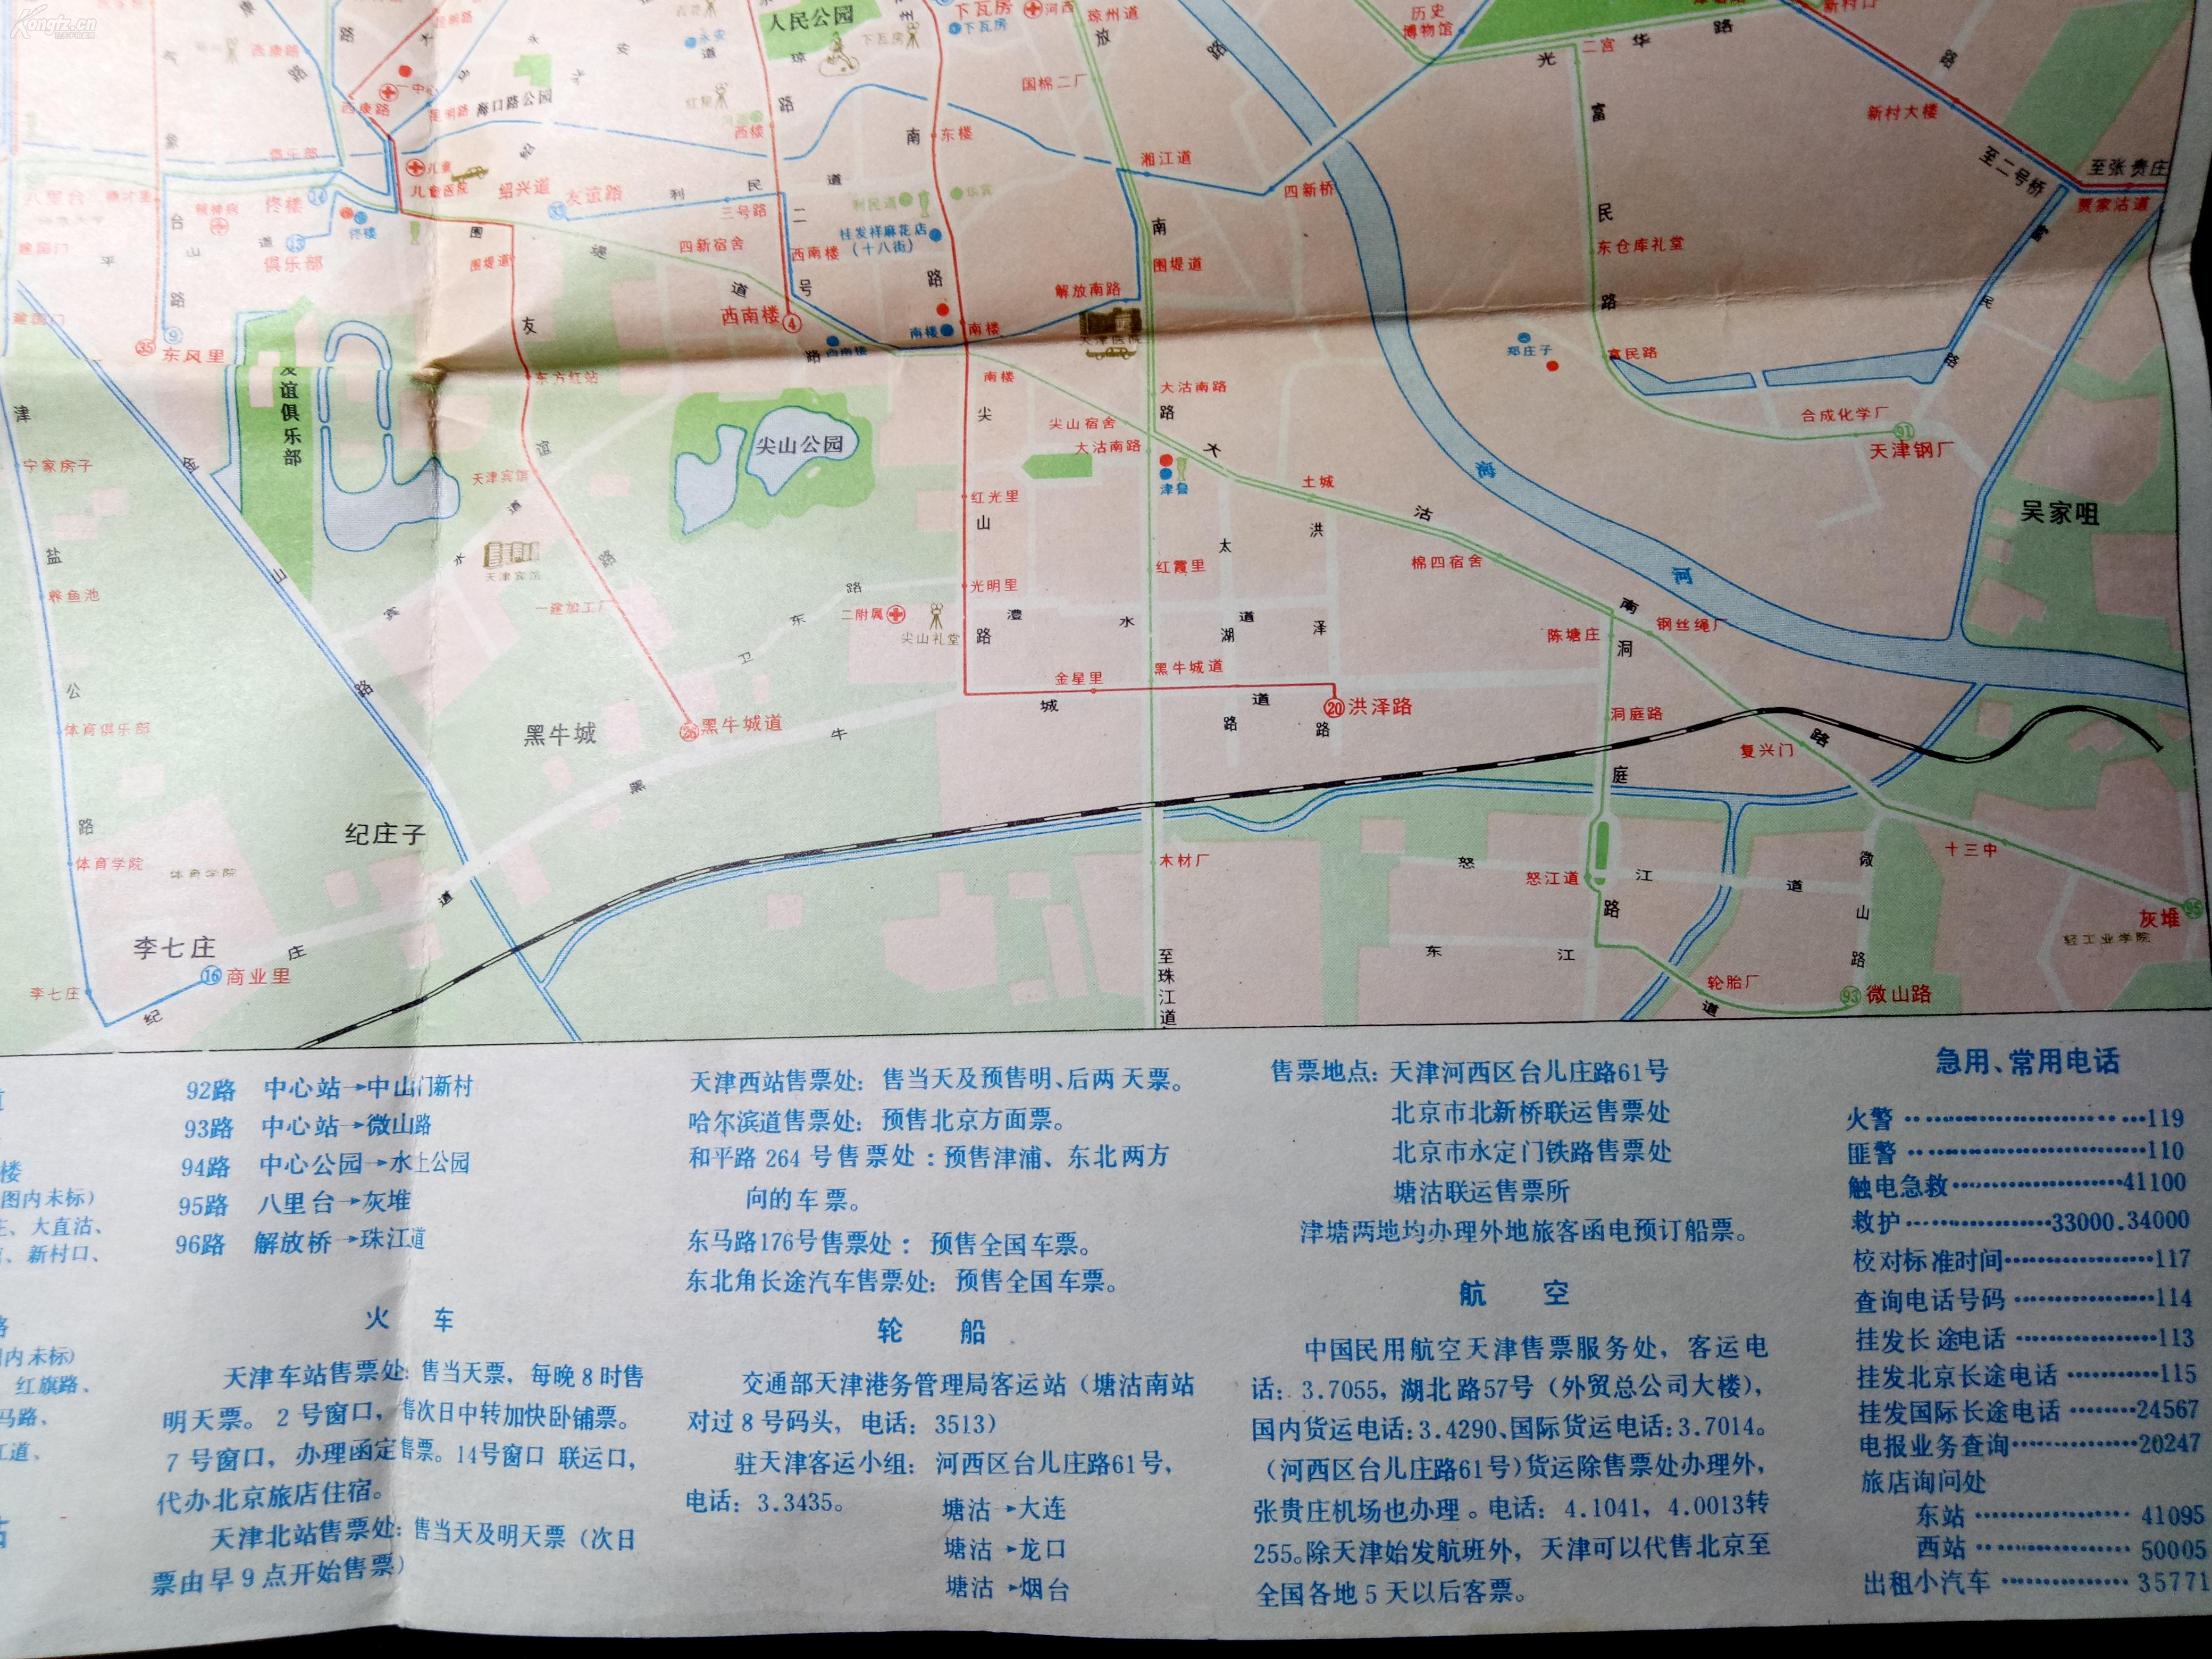 天津地区交通图 天津游览图 天津地图 老地图 1982年图片